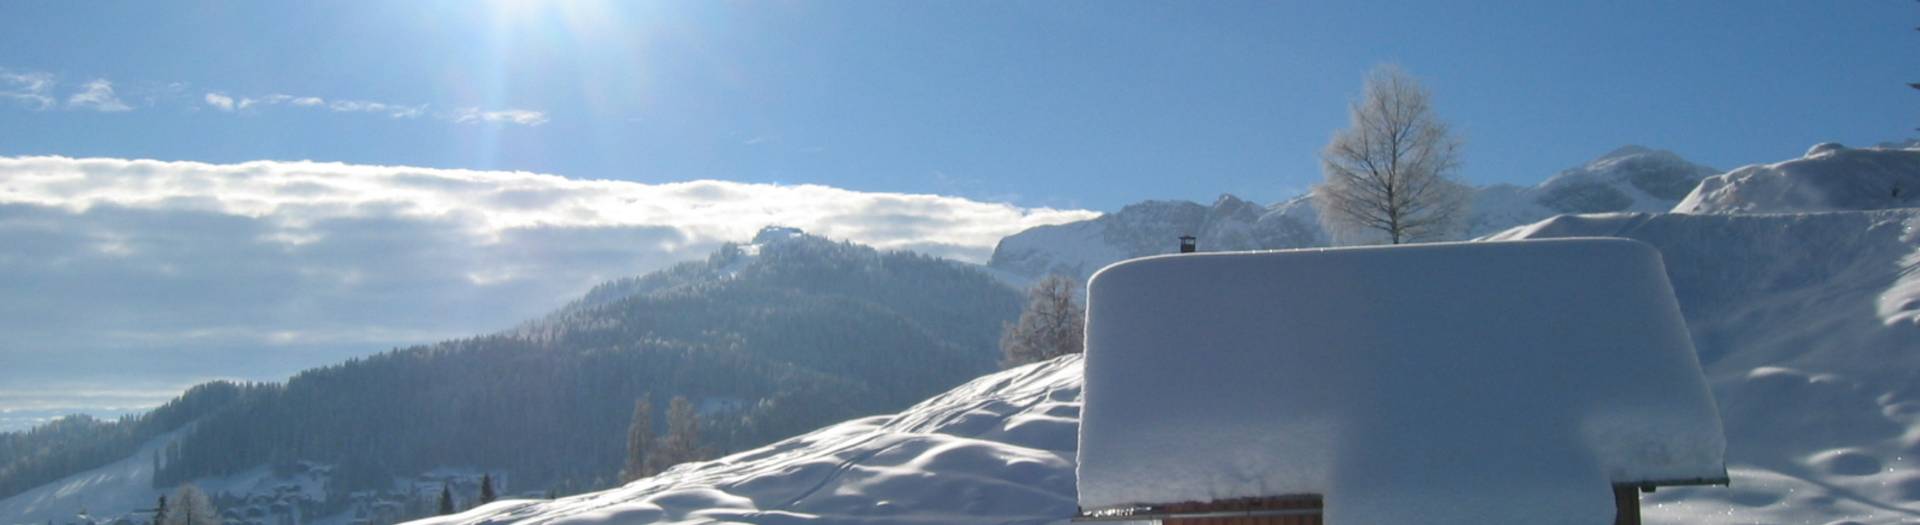 Wintercamping in Kärnten